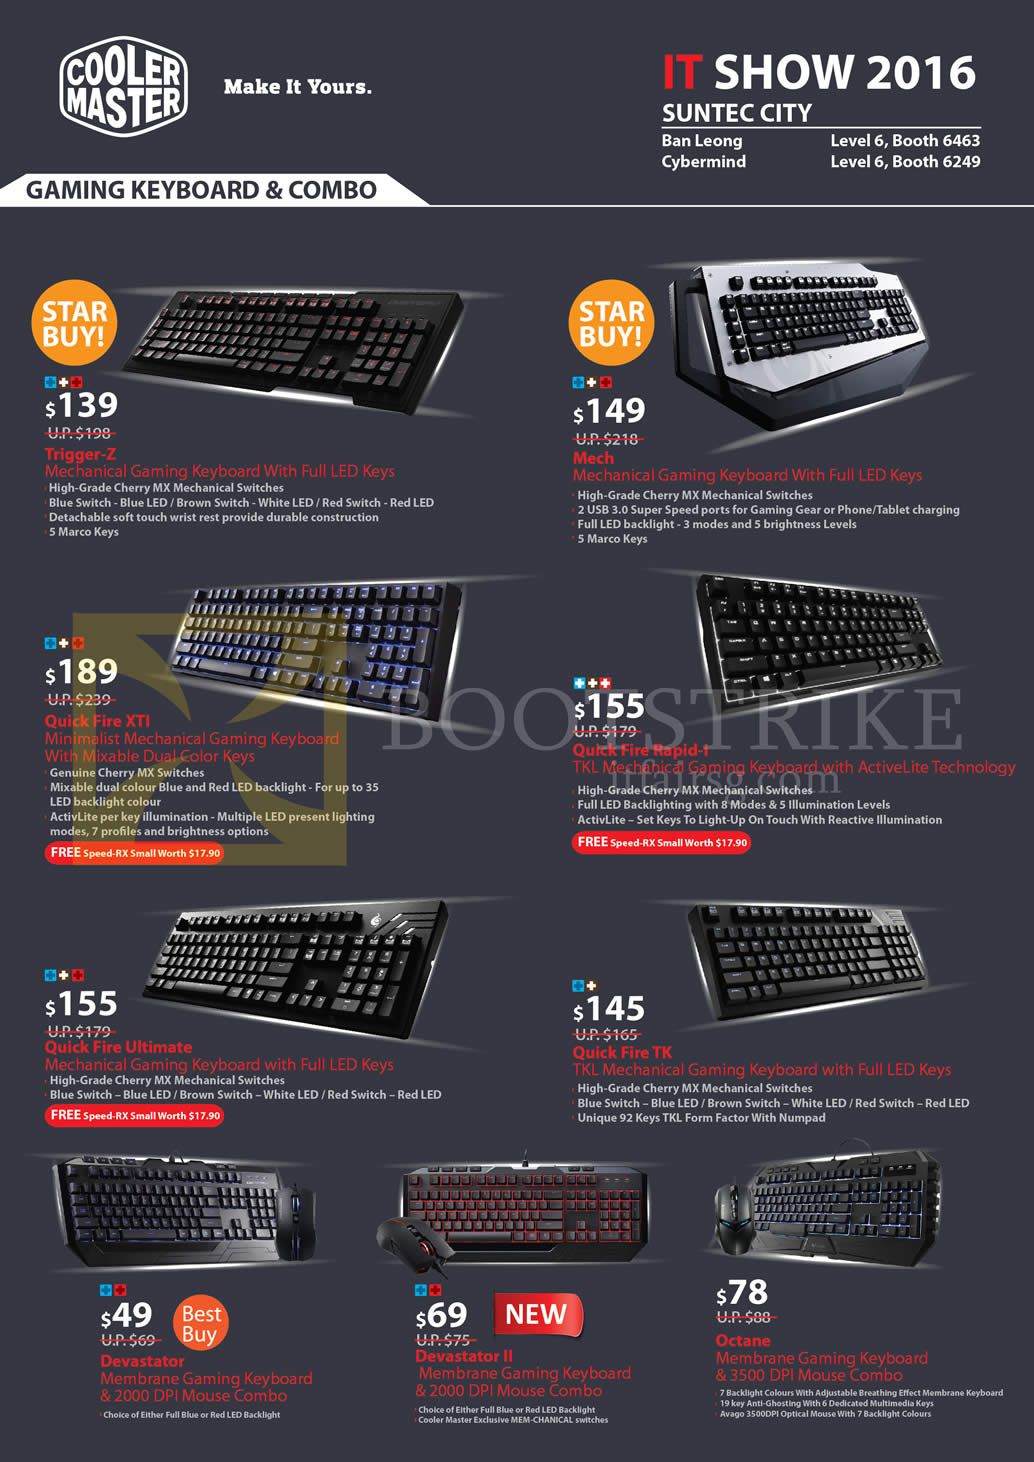 IT SHOW 2016 price list image brochure of Cooler Master Mechanical Keyboards Trigger-Z, Mech, Quick Fire XTI, Rapid-i, Ultimate, TK, Devastator, Octane